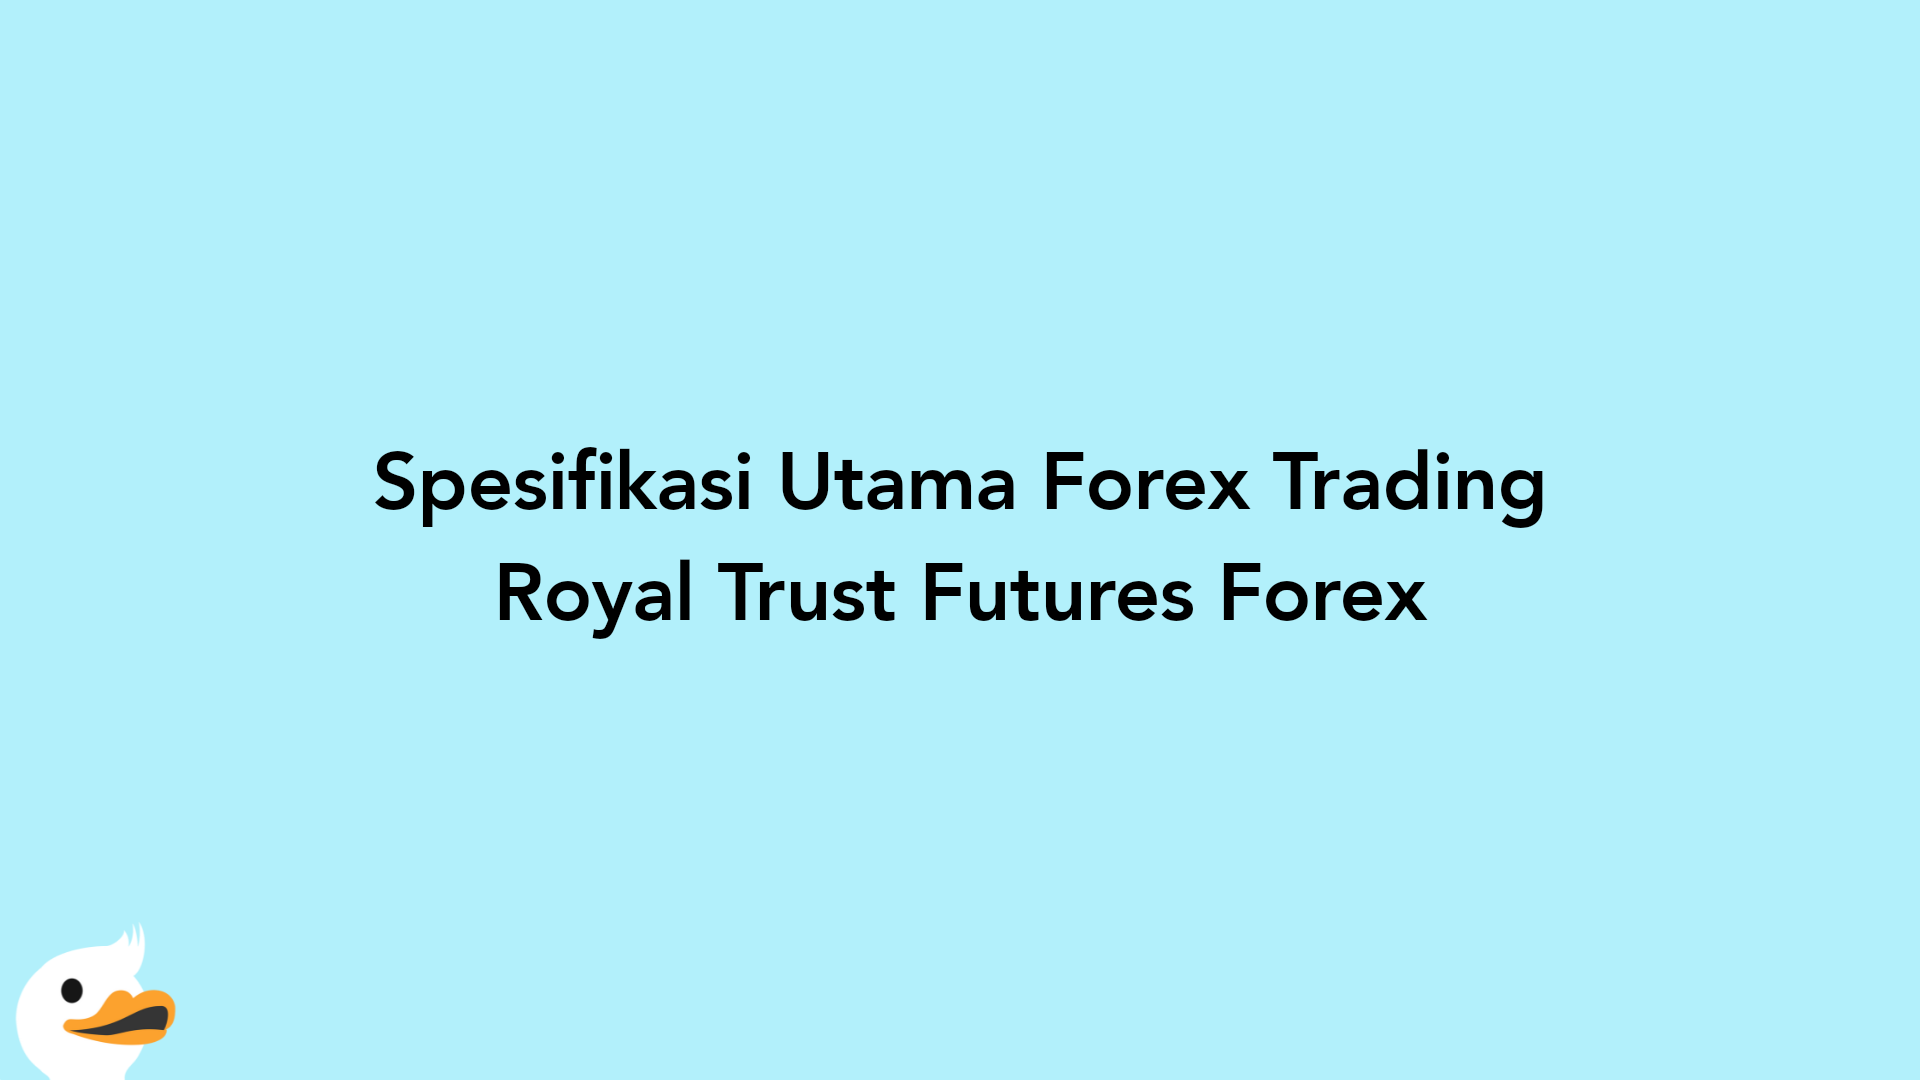 Spesifikasi Utama Forex Trading Royal Trust Futures Forex